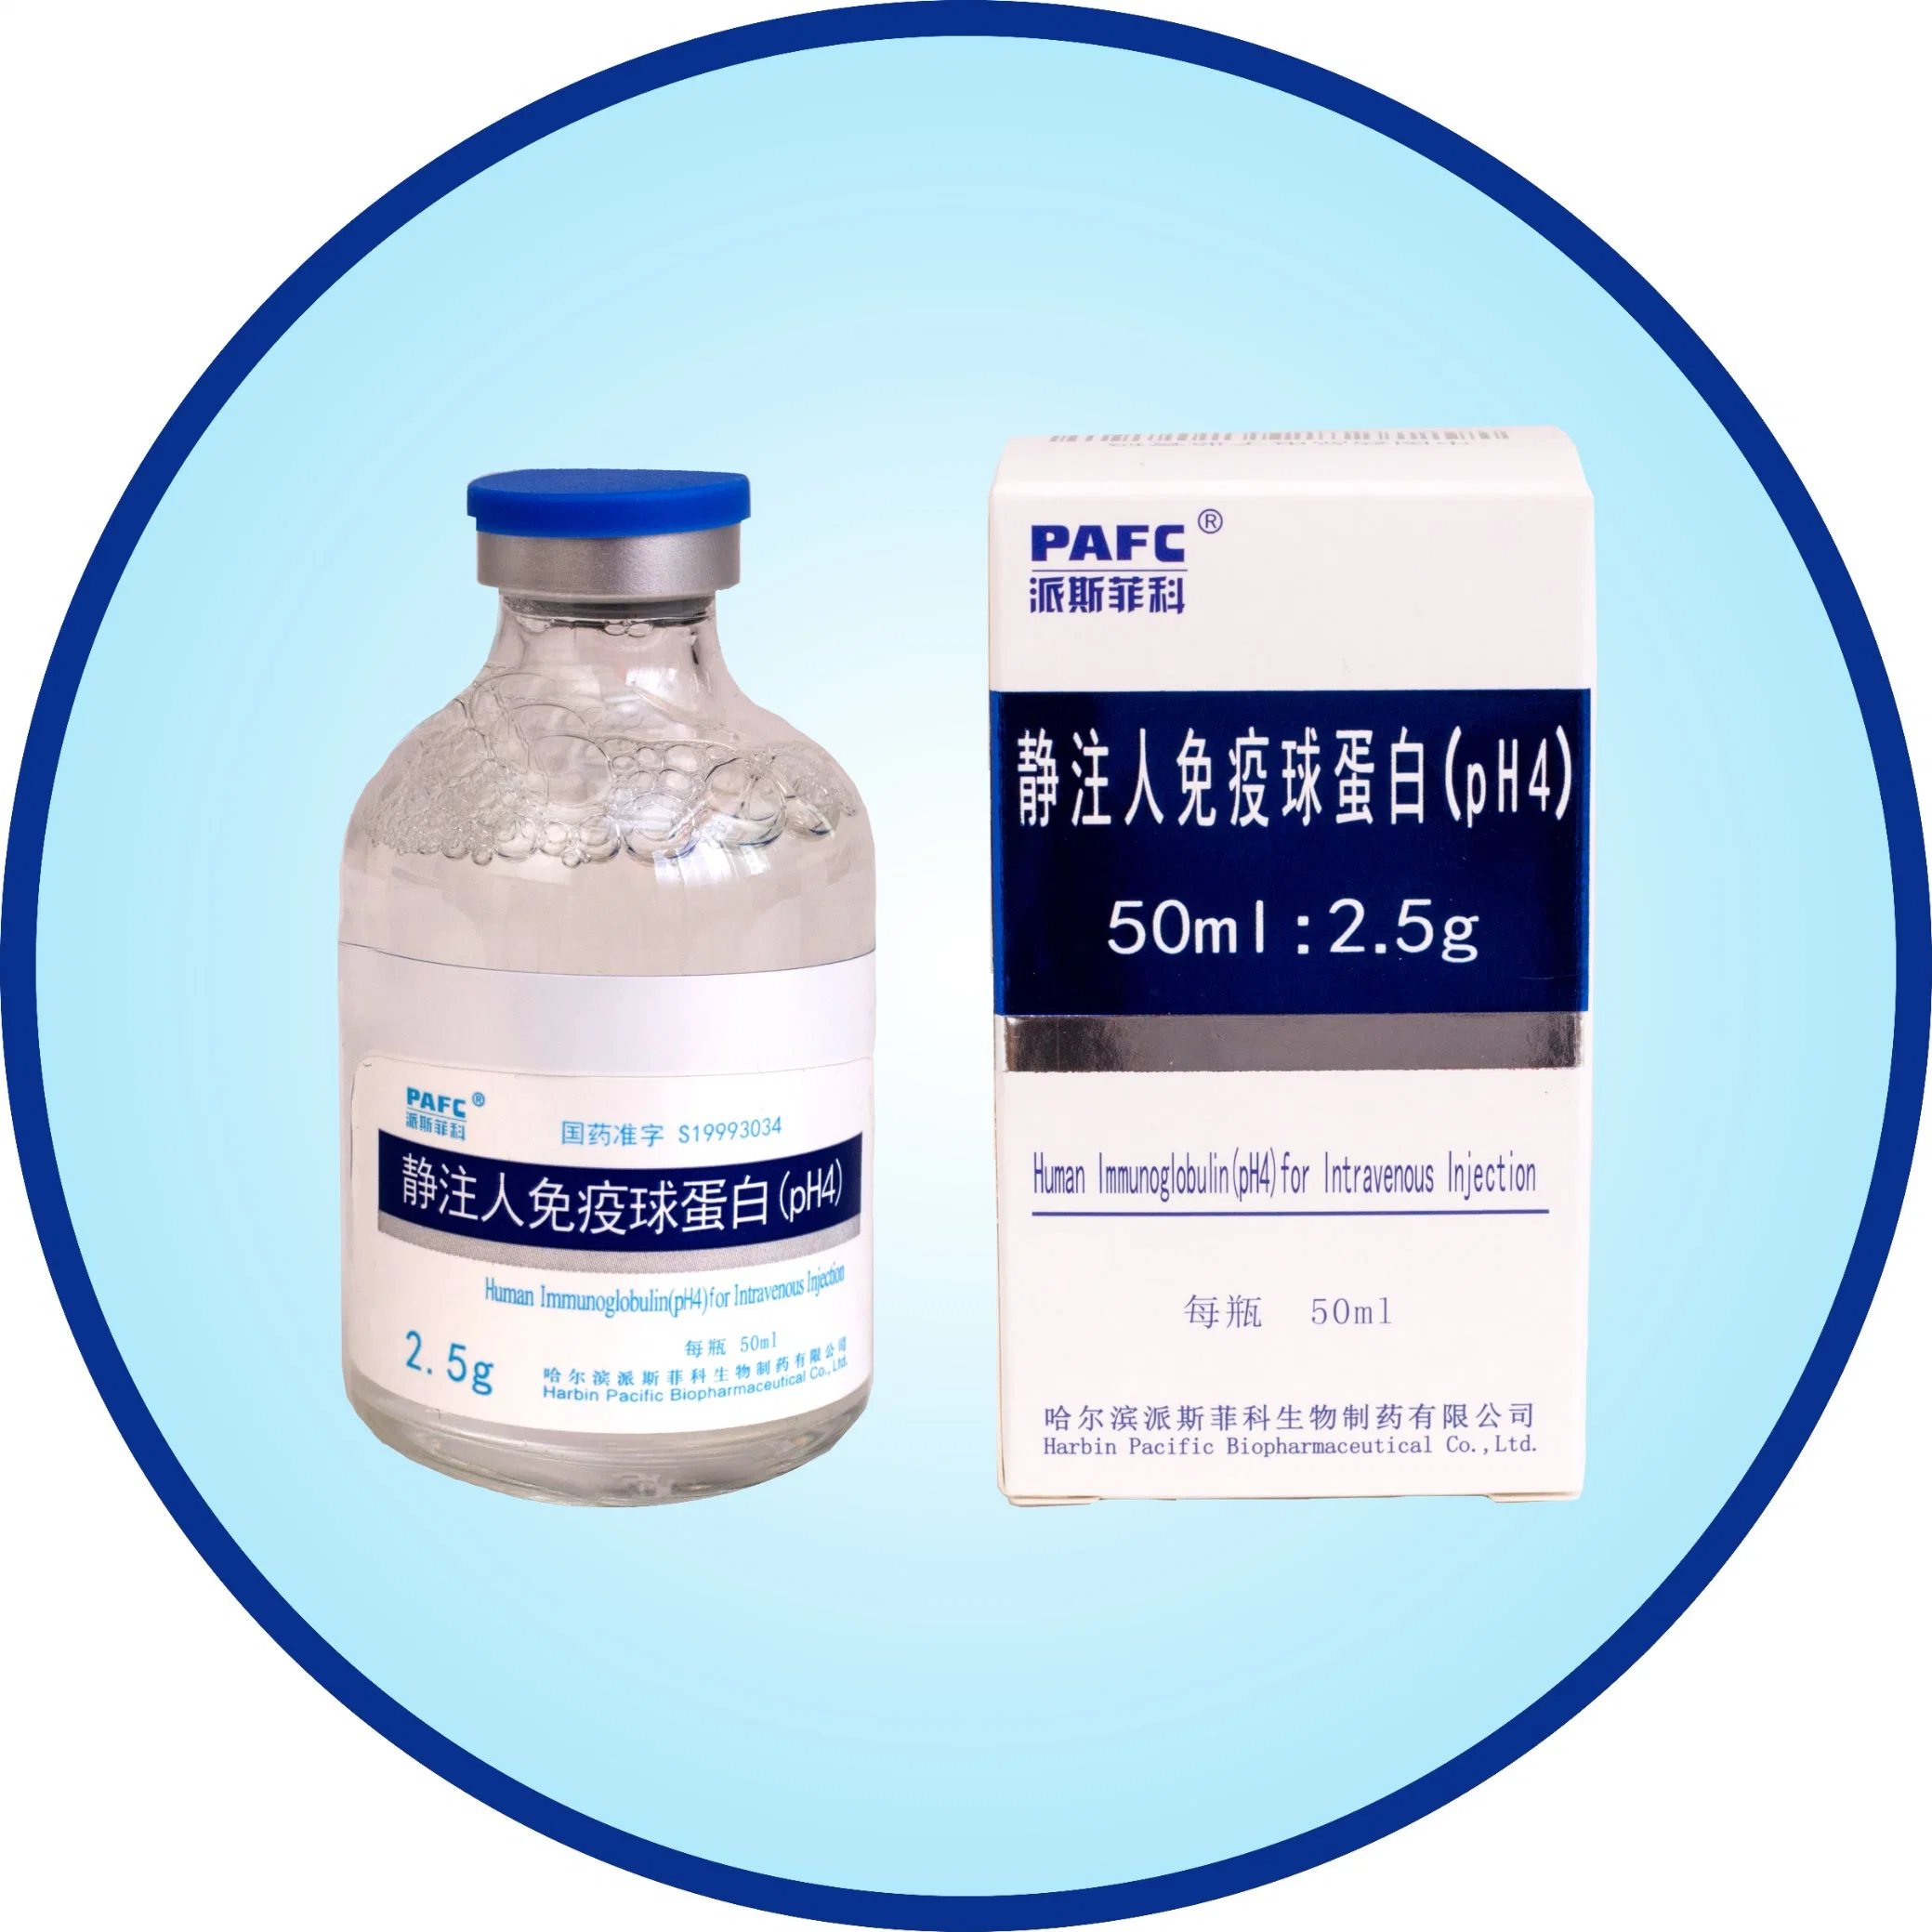 Biologisches Produkt zur Verbesserung der Immunität-Human Immunglobulin (pH4) für intravenöse Injektion